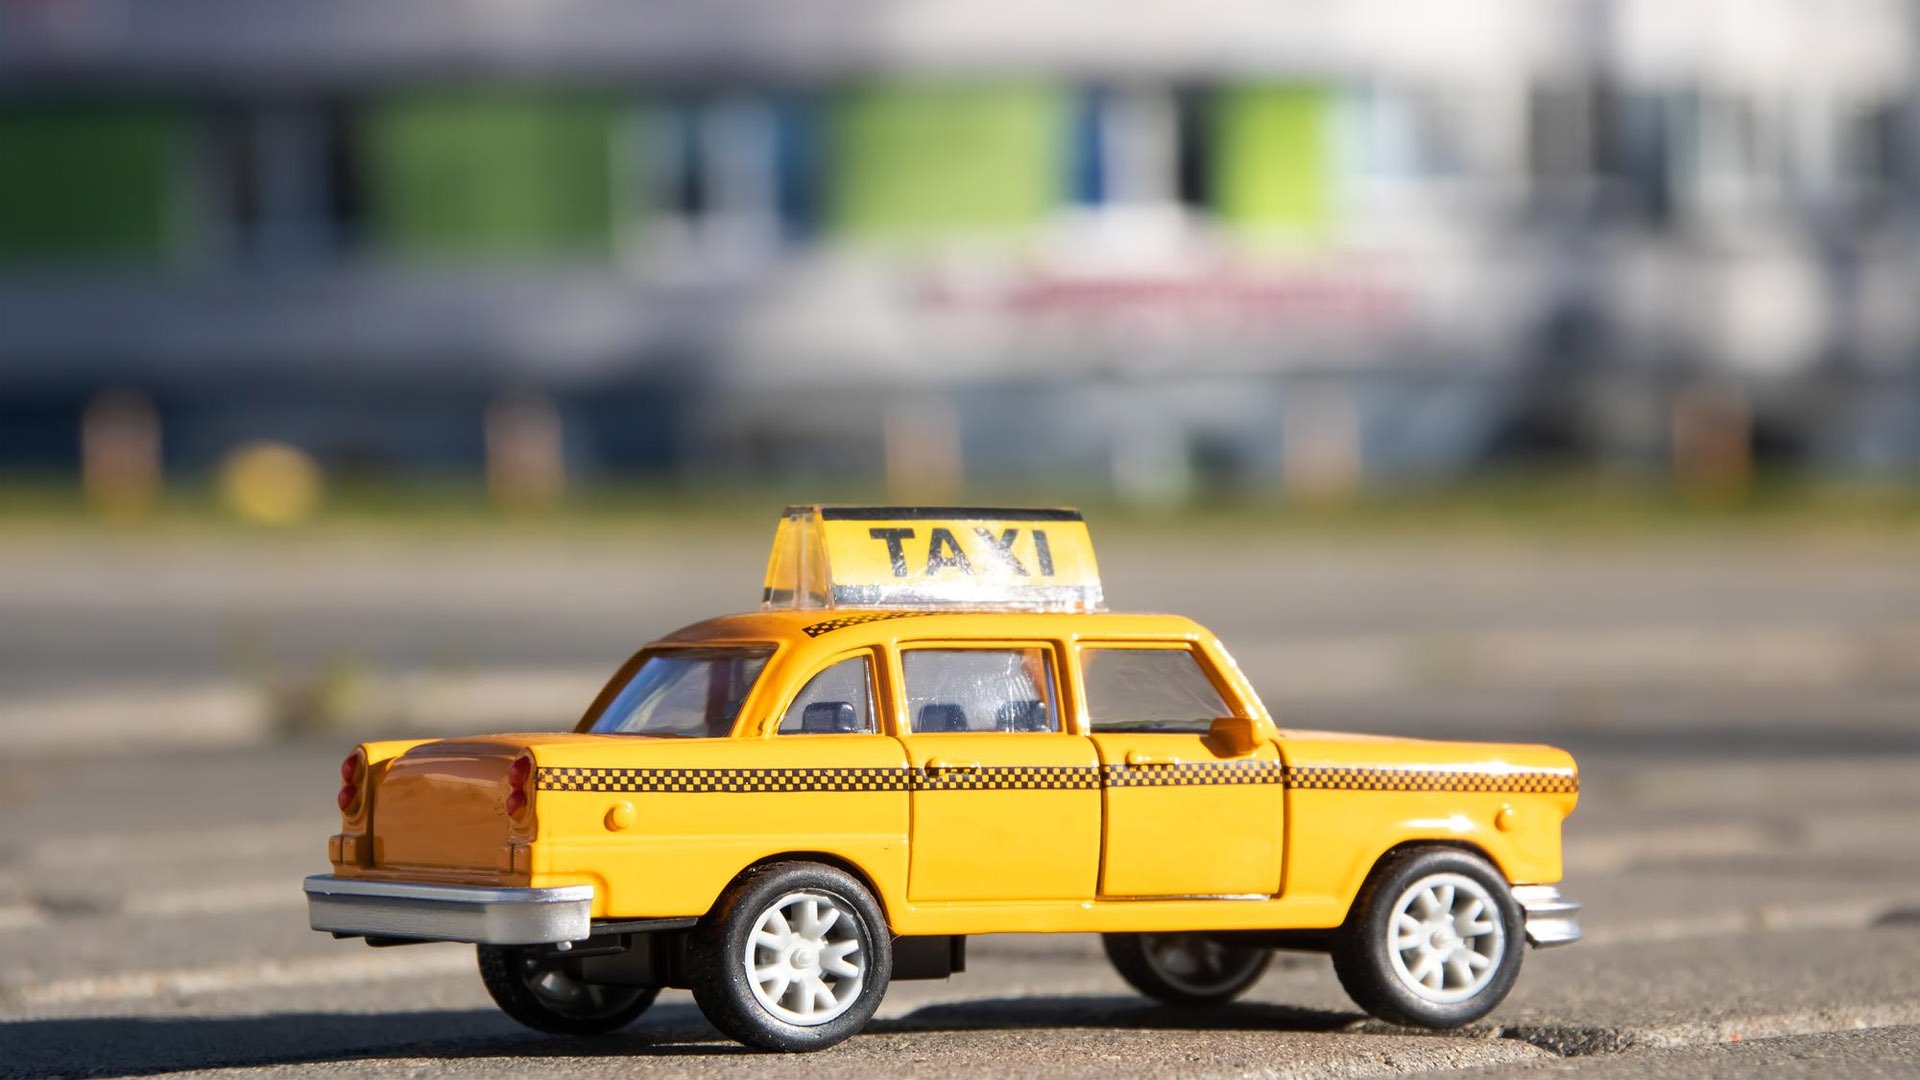 Сенаторы рекомендовали Правительству поддержать локализацию автомобилей такси